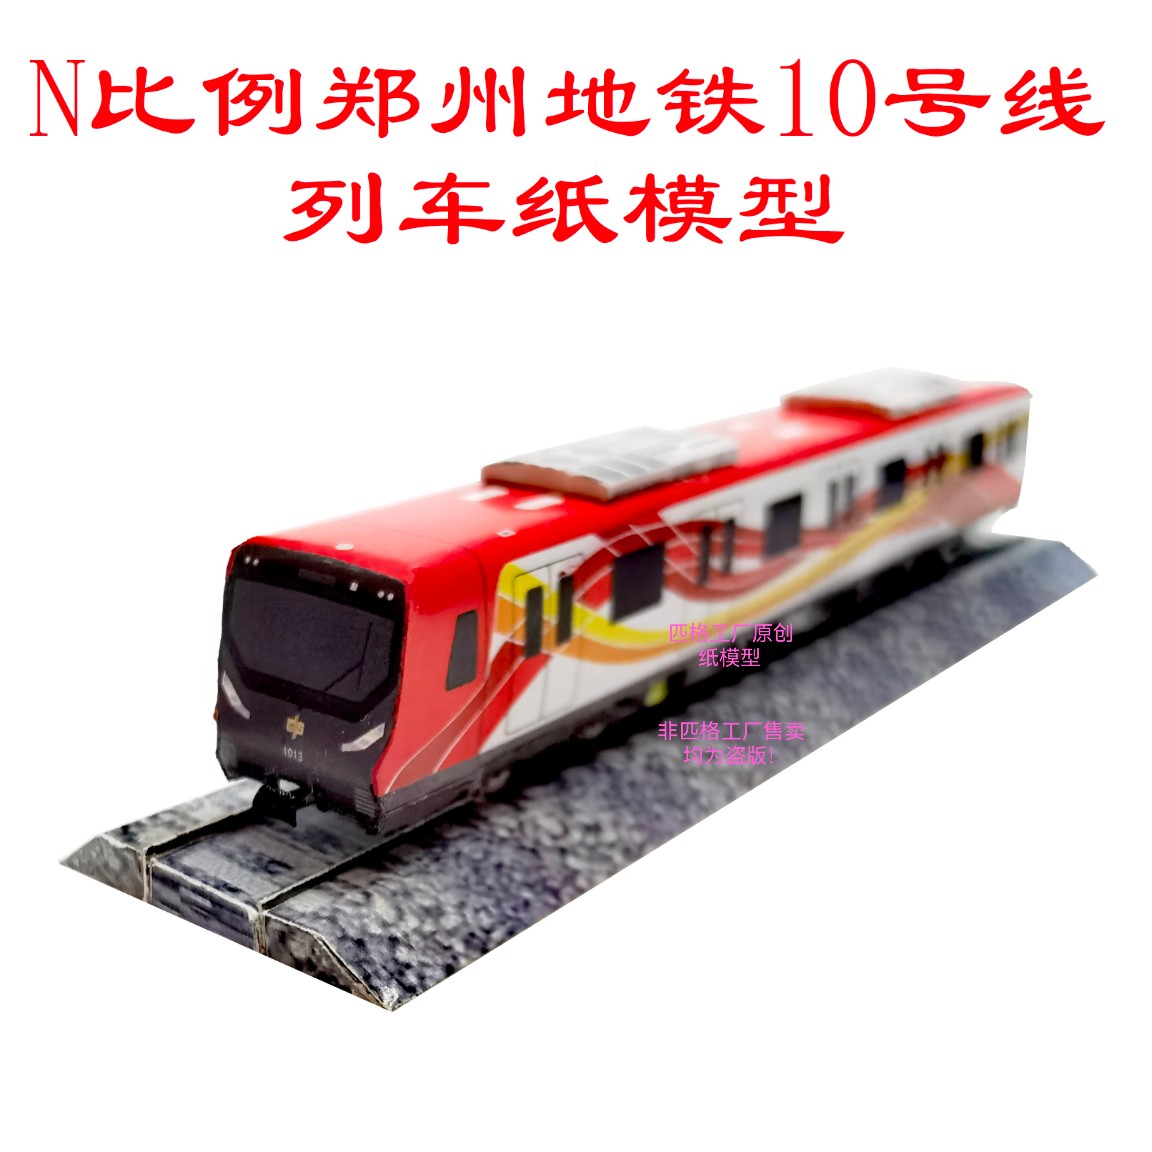 匹格n比例郑州地铁10号线列车模型3D纸模DIY手工火车轻轨地铁模型